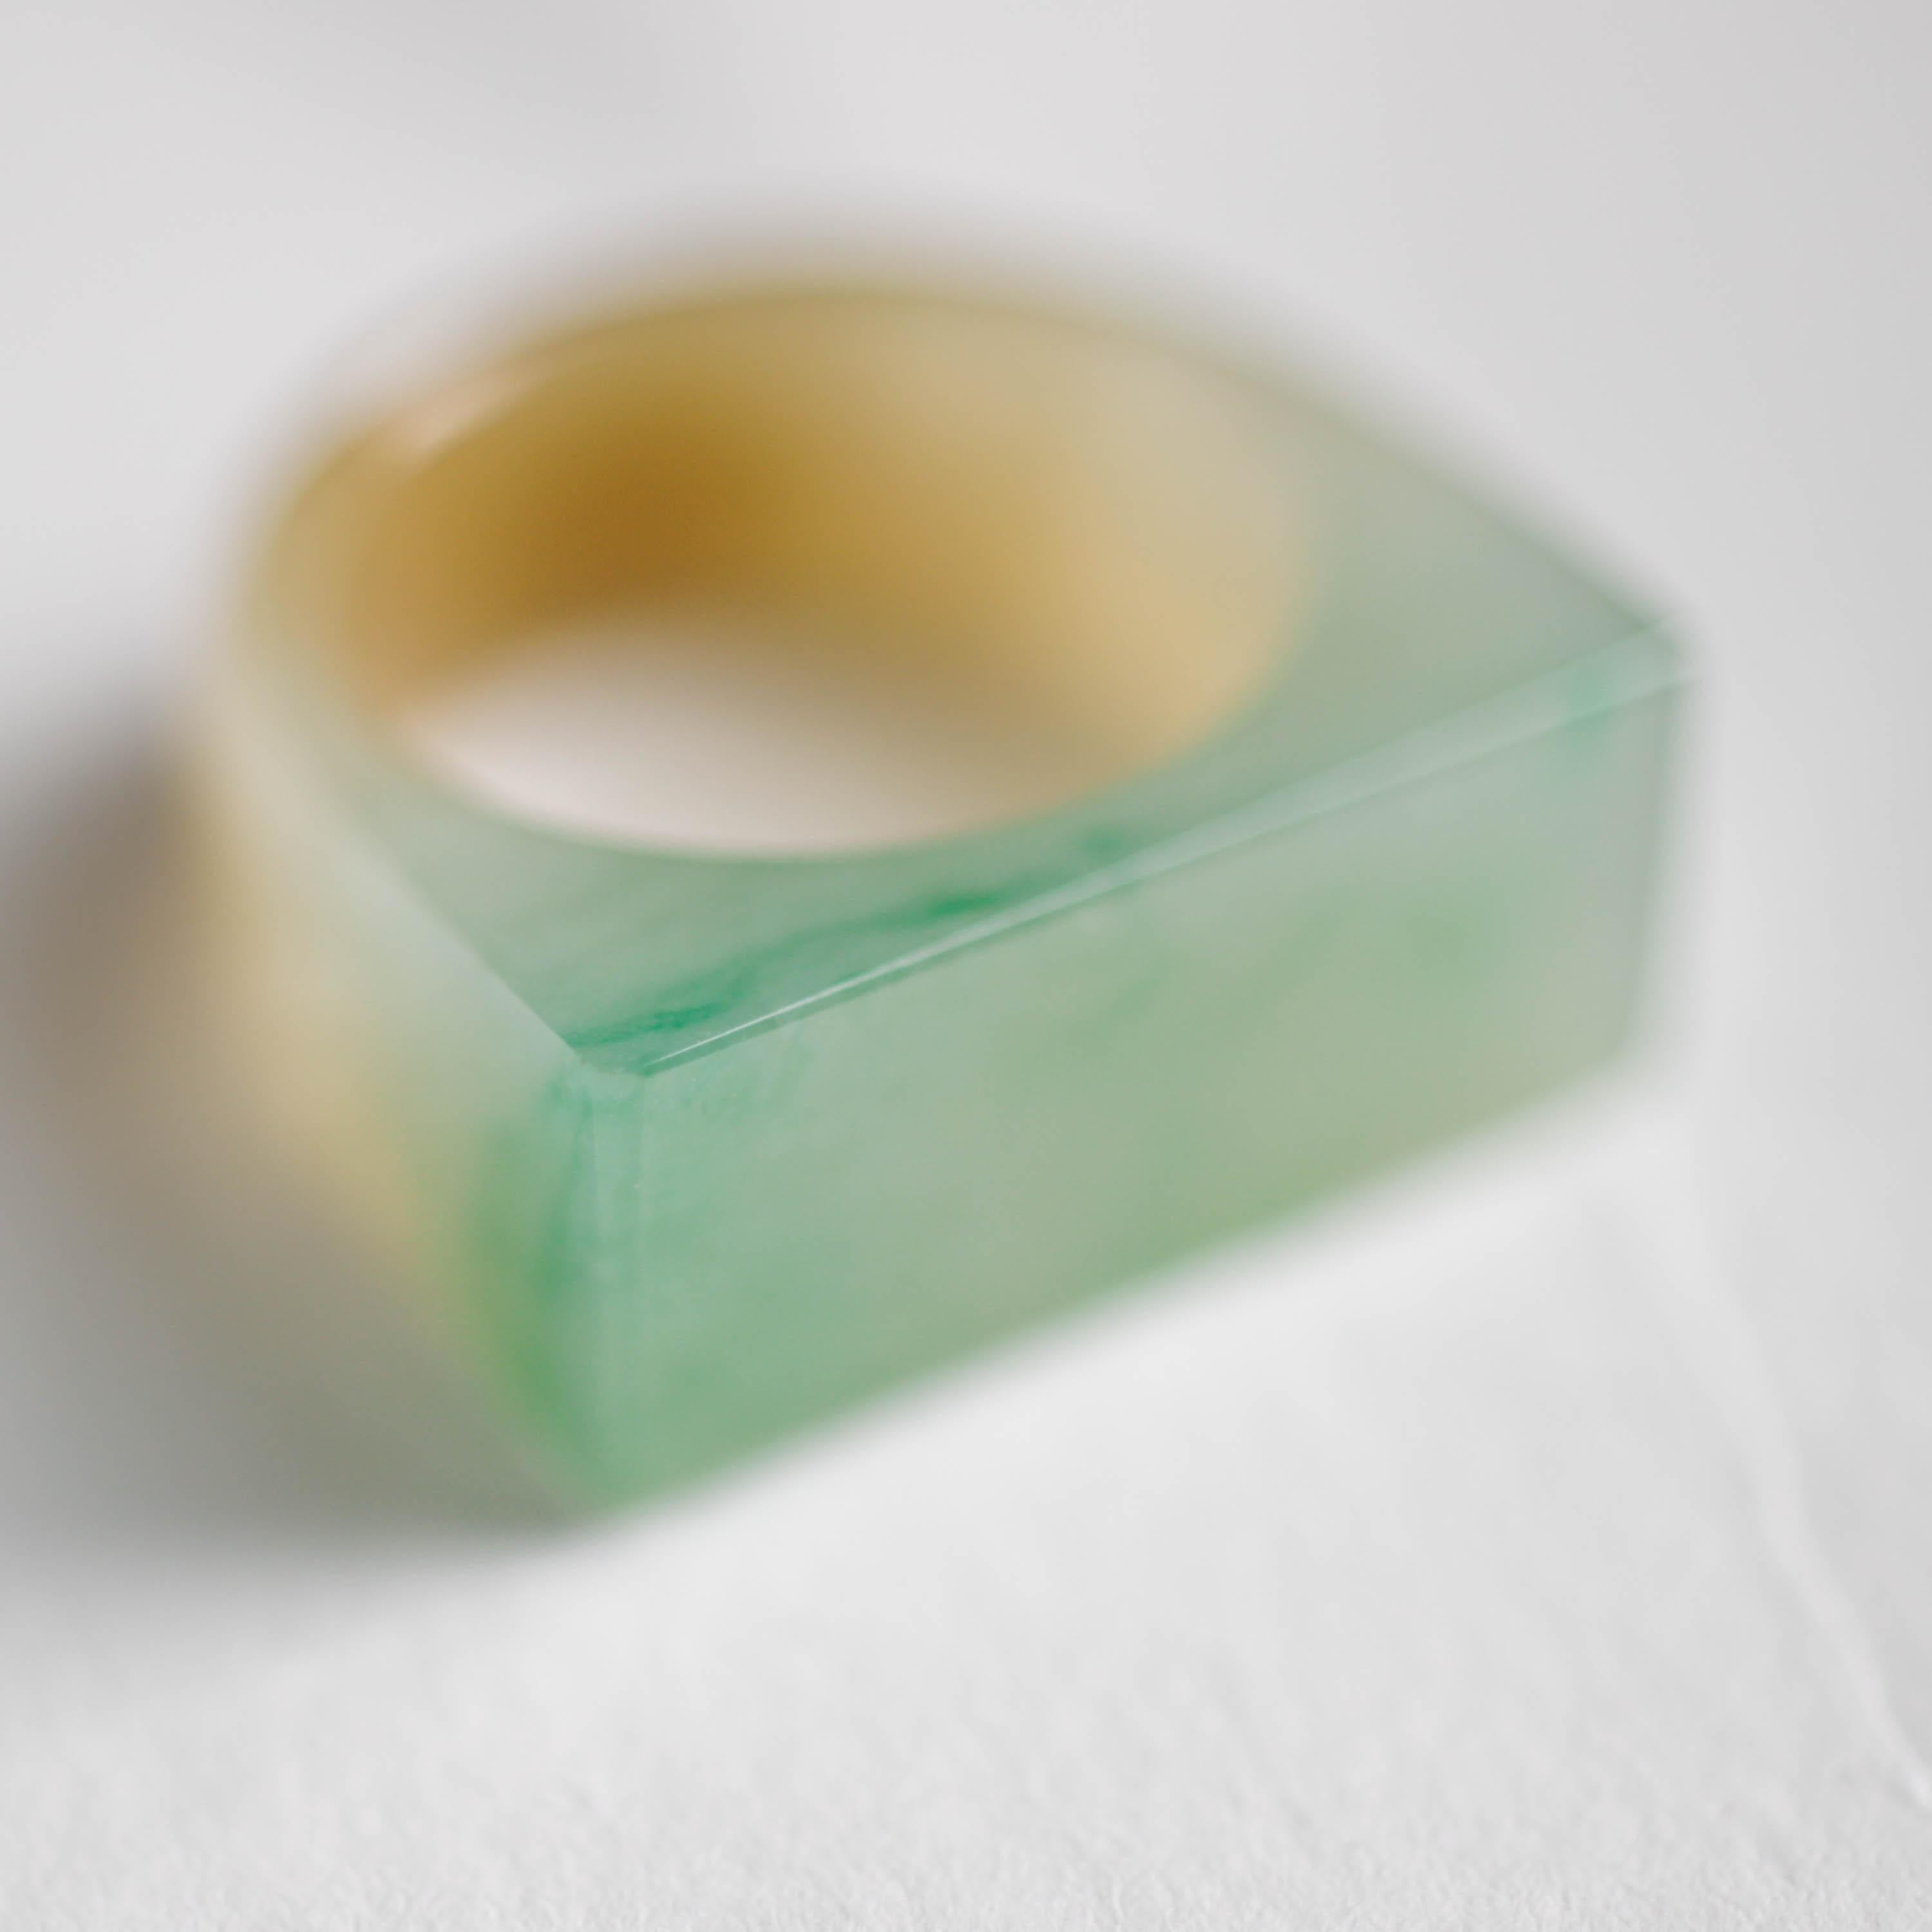 jade translucent